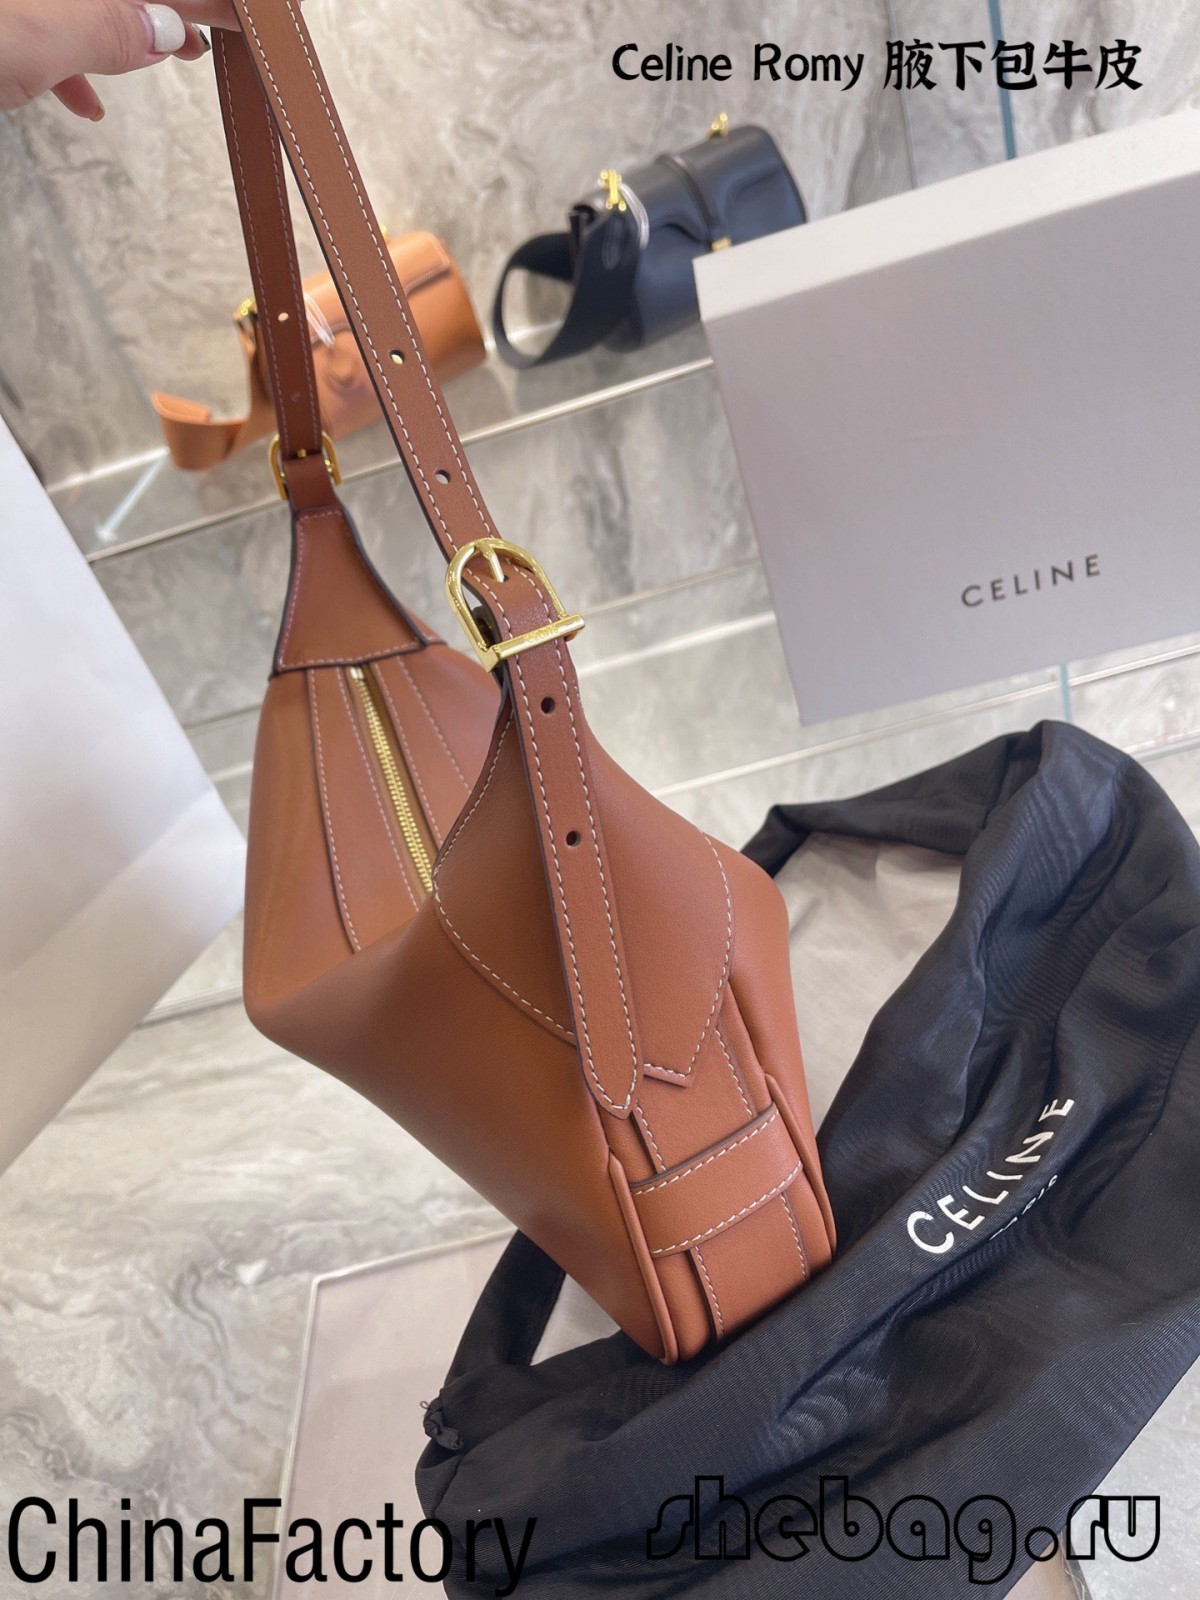 Optima replica sacculorum celinorum recensionum: Celine Romy (2022 edition) -Best Quality Fake Louis Vuitton Bag Online Store, Replica designer bag ru